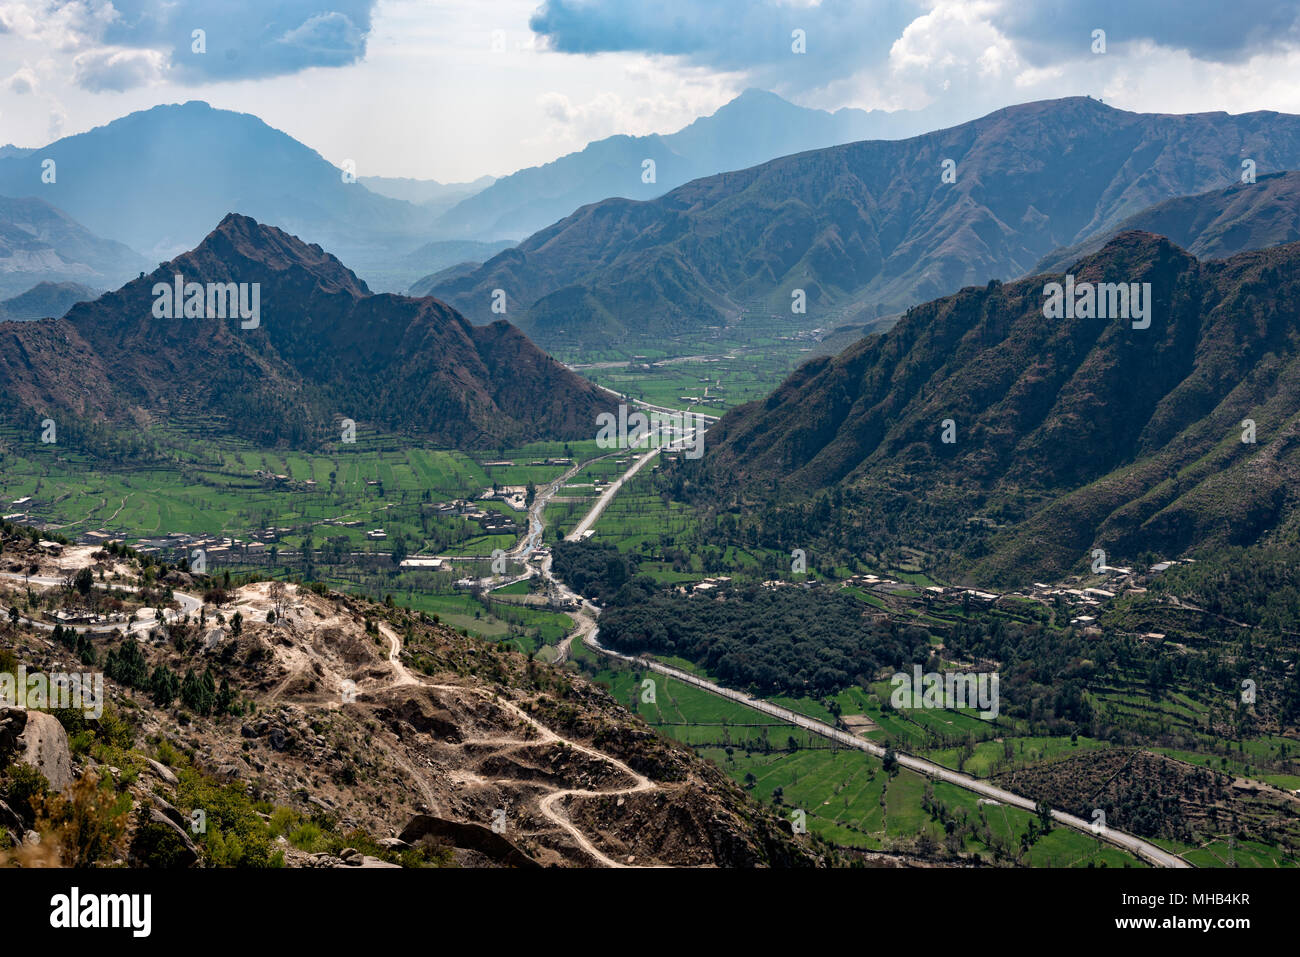 Questi paesaggi di montagna foto è stata scattata a adistrict Buner di KPK provincia del Pakistan. Nonostante la povertà di questo quartiere è ricco di n Foto Stock